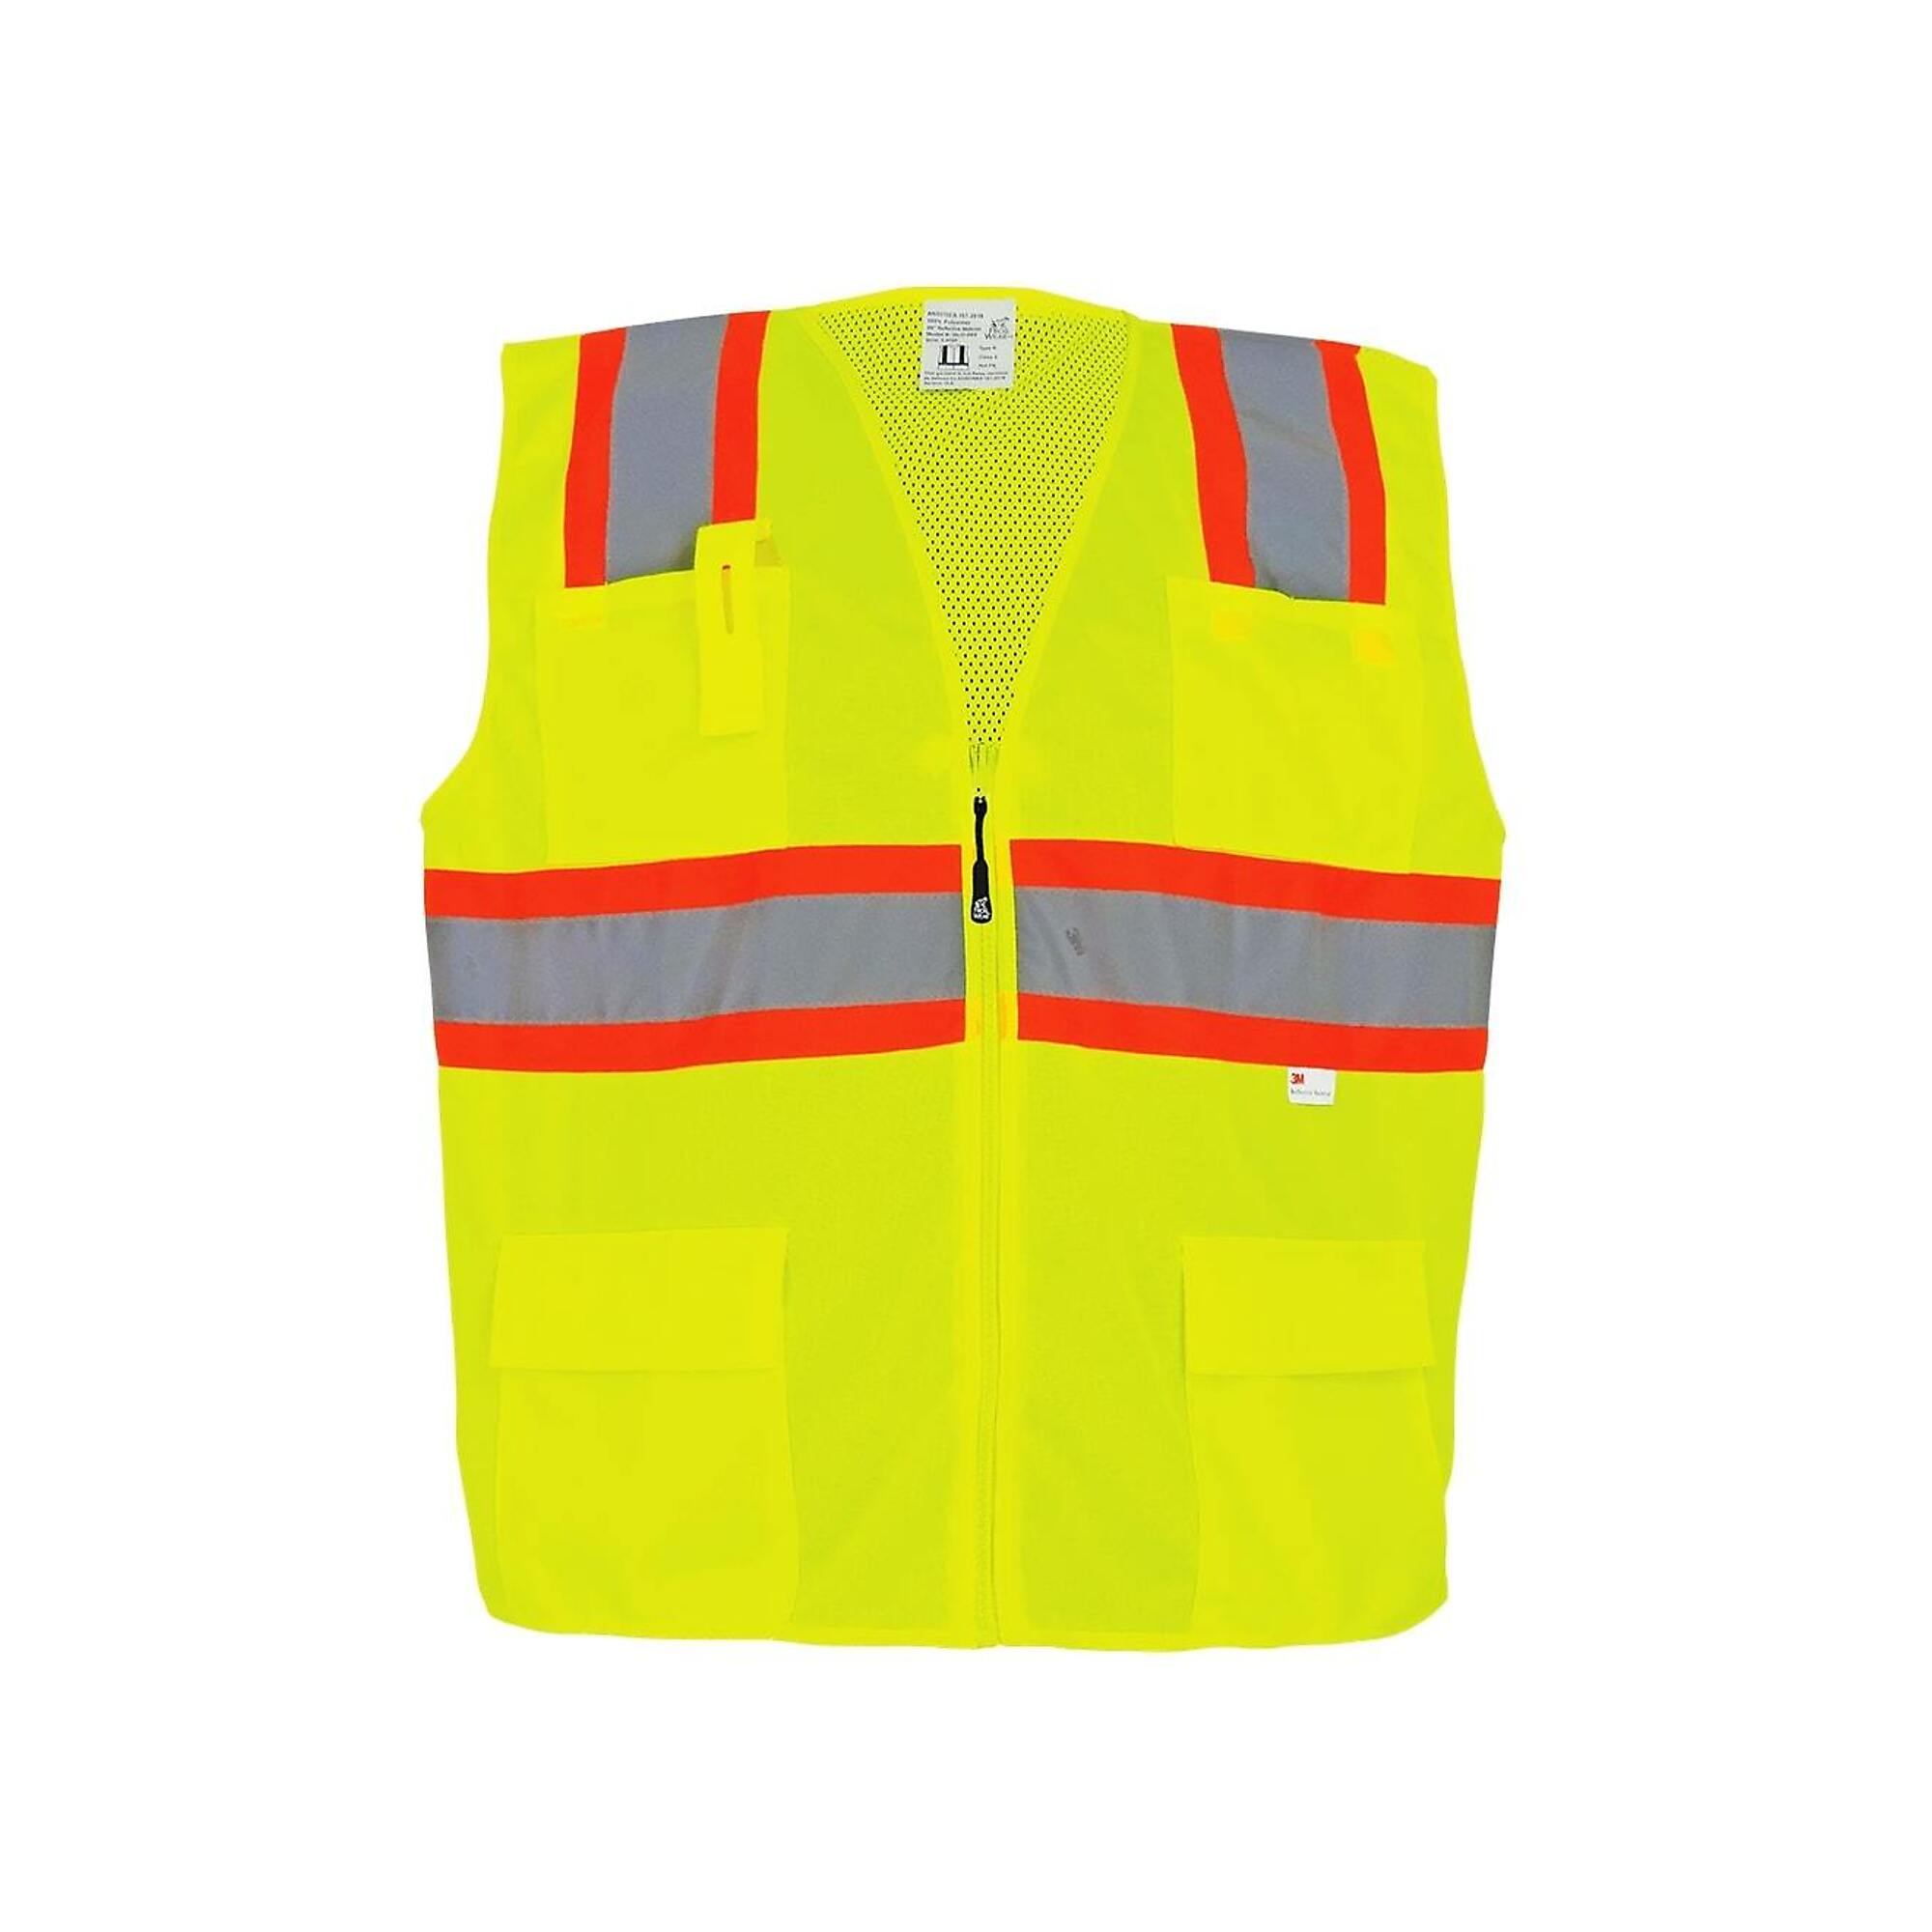 FrogWear Surveyors Vest, S, Yellow, Model GLO-003-S